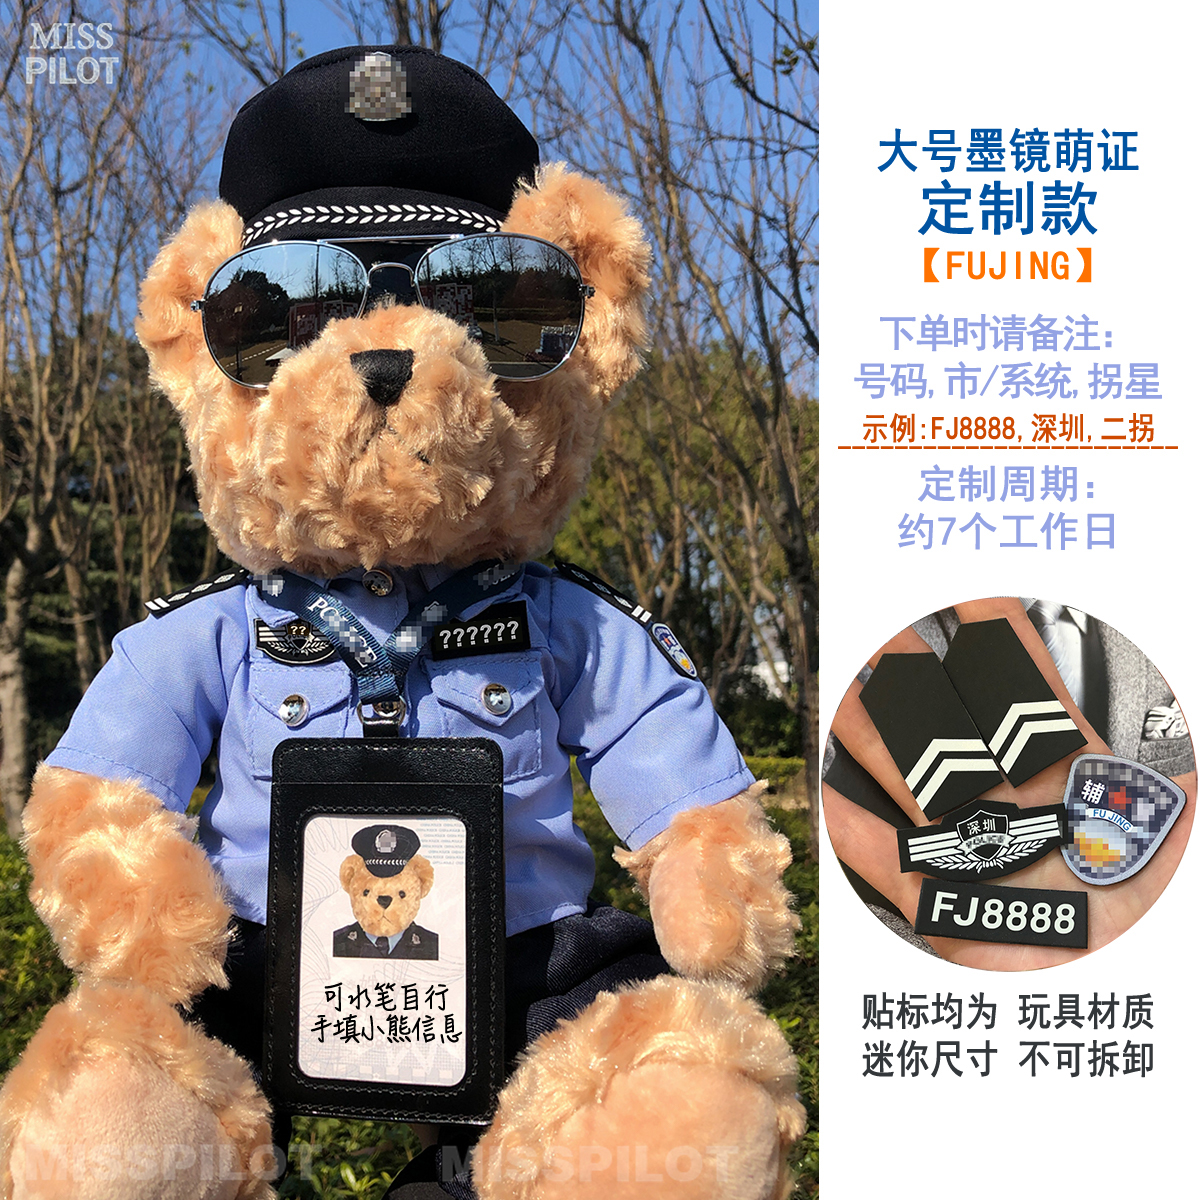 警察熊巡警民警交警公仔熊POLICE礼物毛绒玩具纪念品玩偶定制